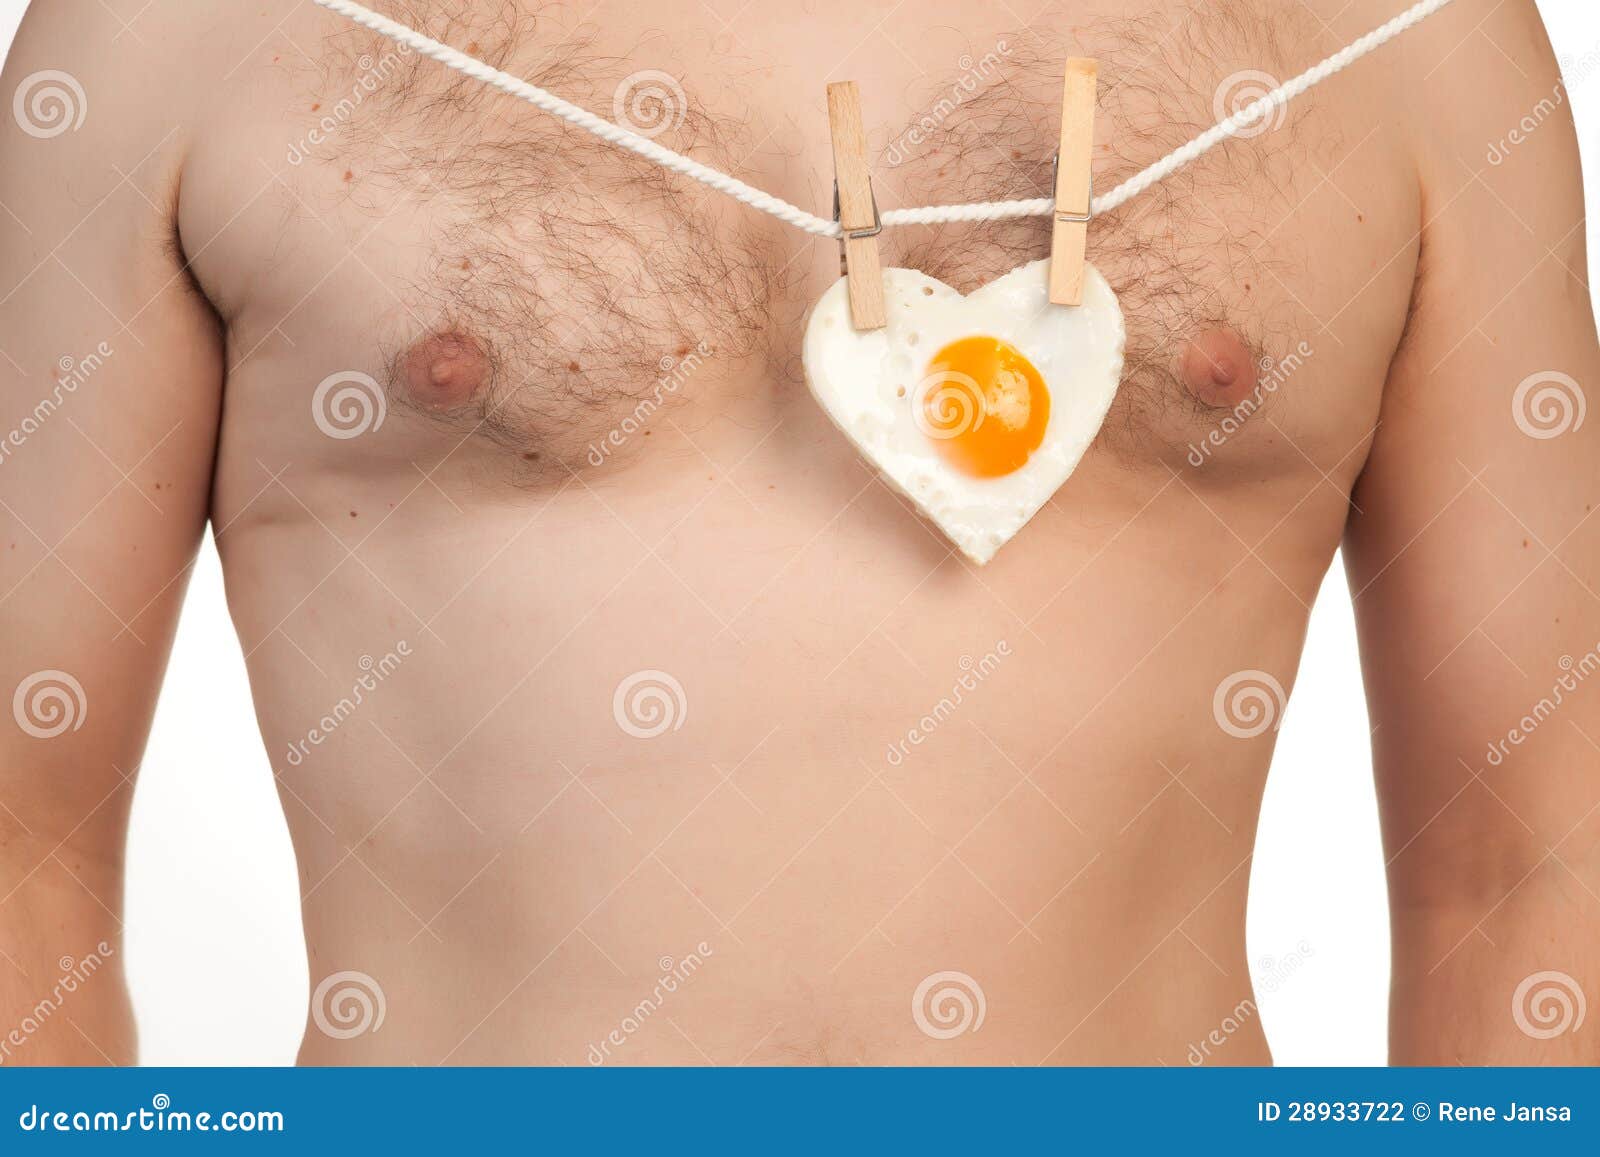 https://thumbs.dreamstime.com/z/heart-shaped-fried-egg-man-s-chest-28933722.jpg